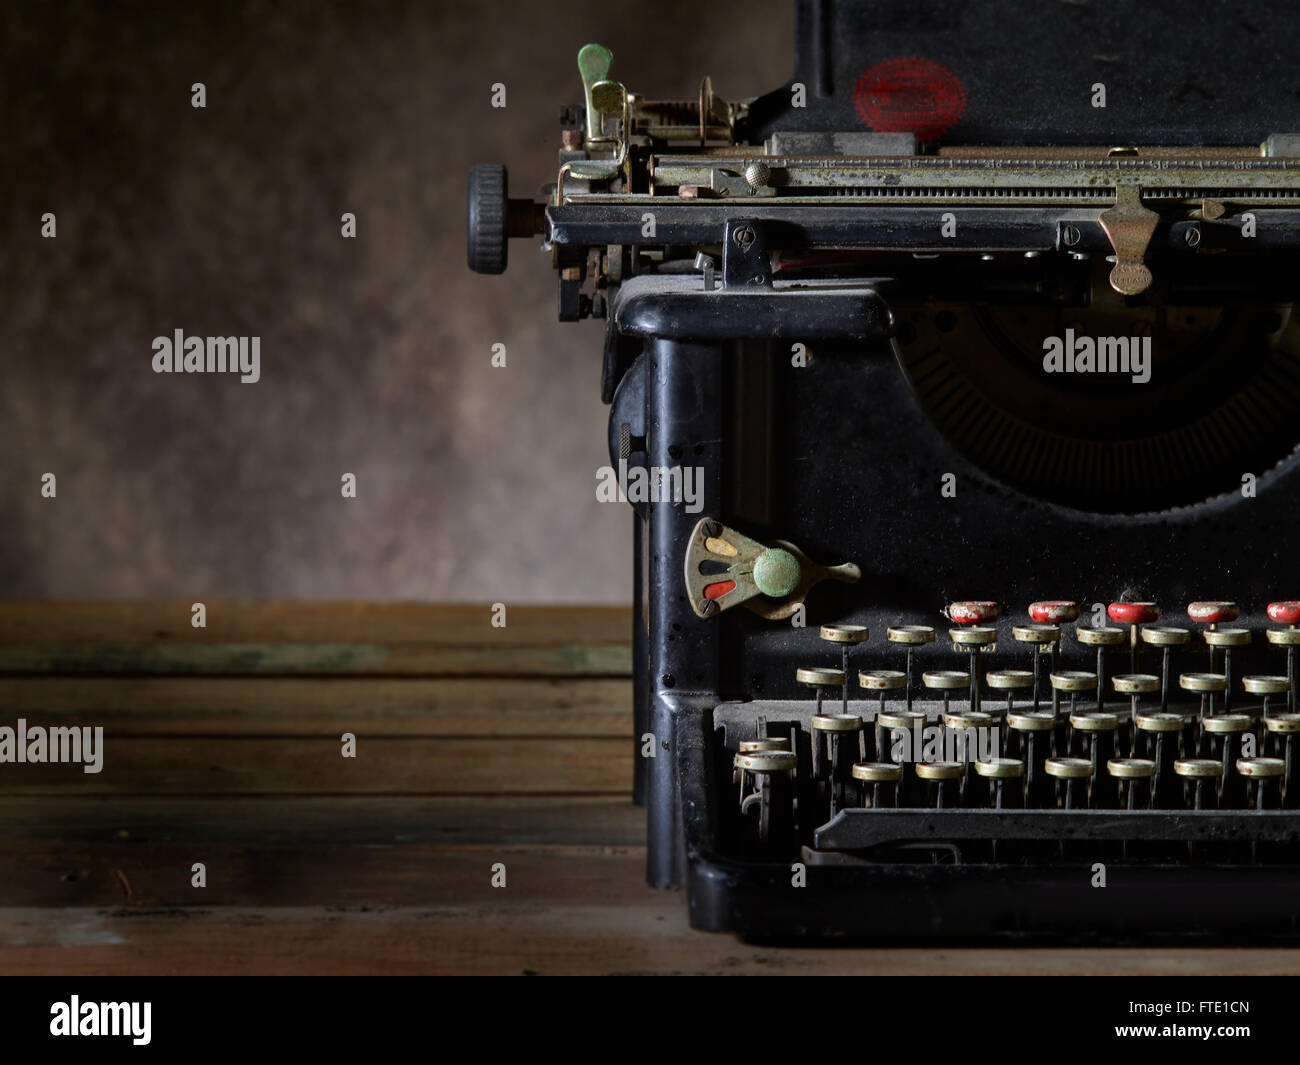 Alte antike Schreibmaschine Stockfoto